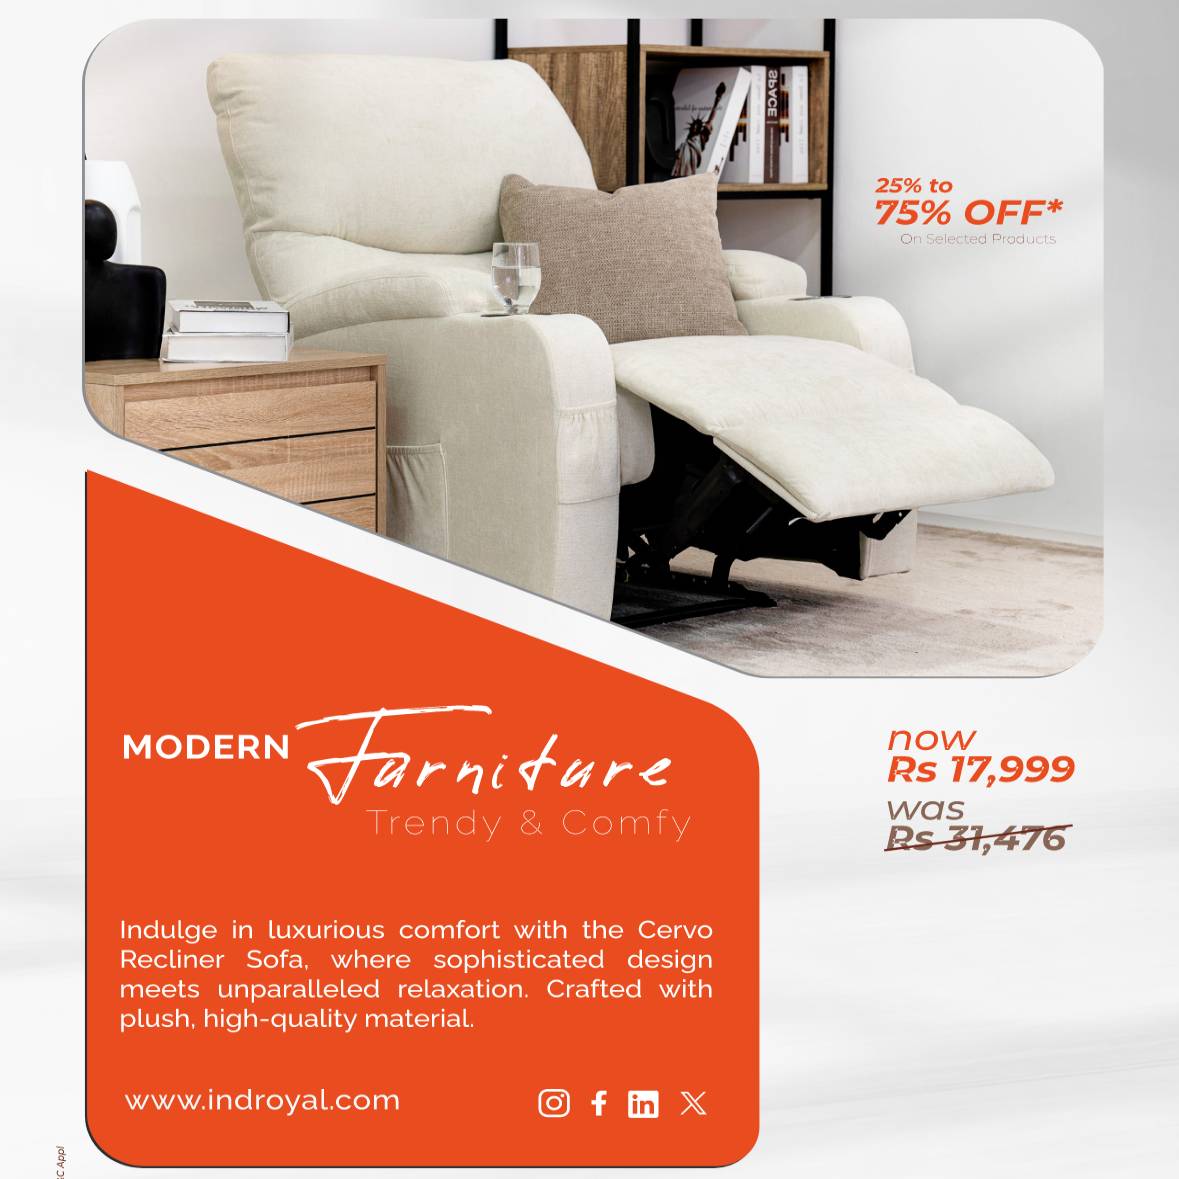 Indroyal Furniture Offer